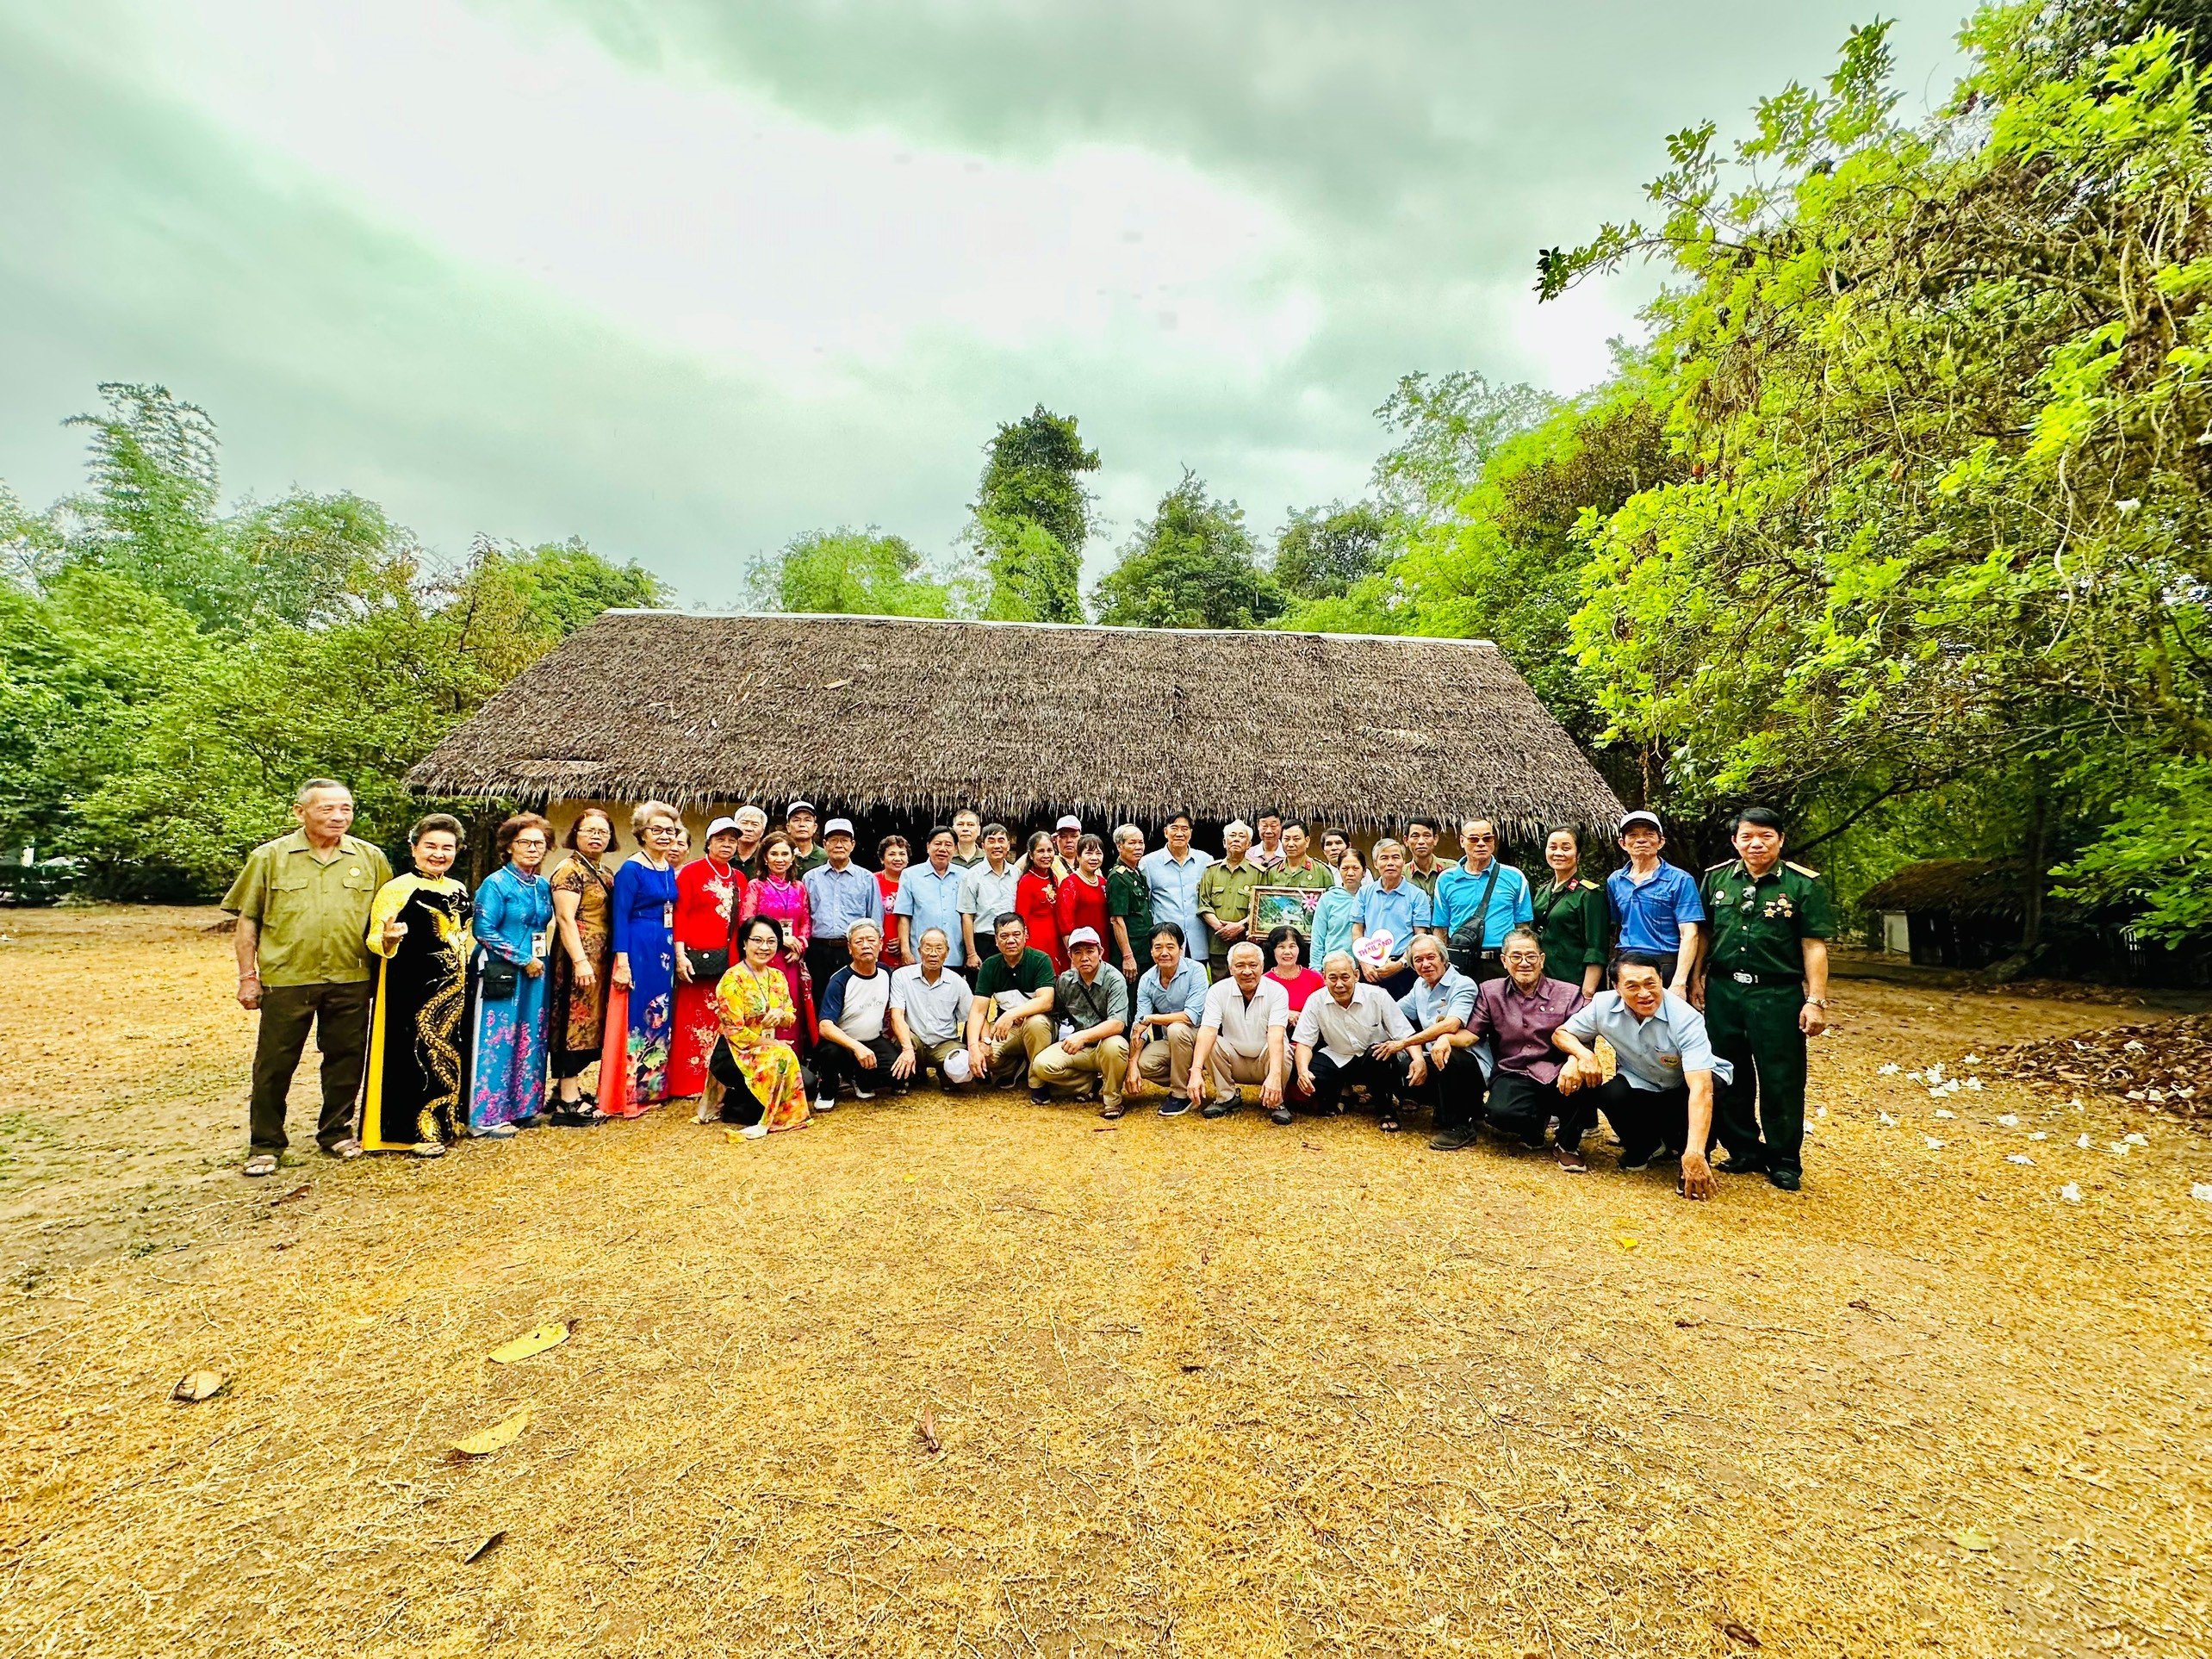 Đoàn cựu chiến binh tham gia chương trình thăm lại chiến trường xưa: Lào - Thái Lan. Đoàn chụp ảnh tại nhà Bác Hồ ở Nakhon Phanom (Thái Lan)